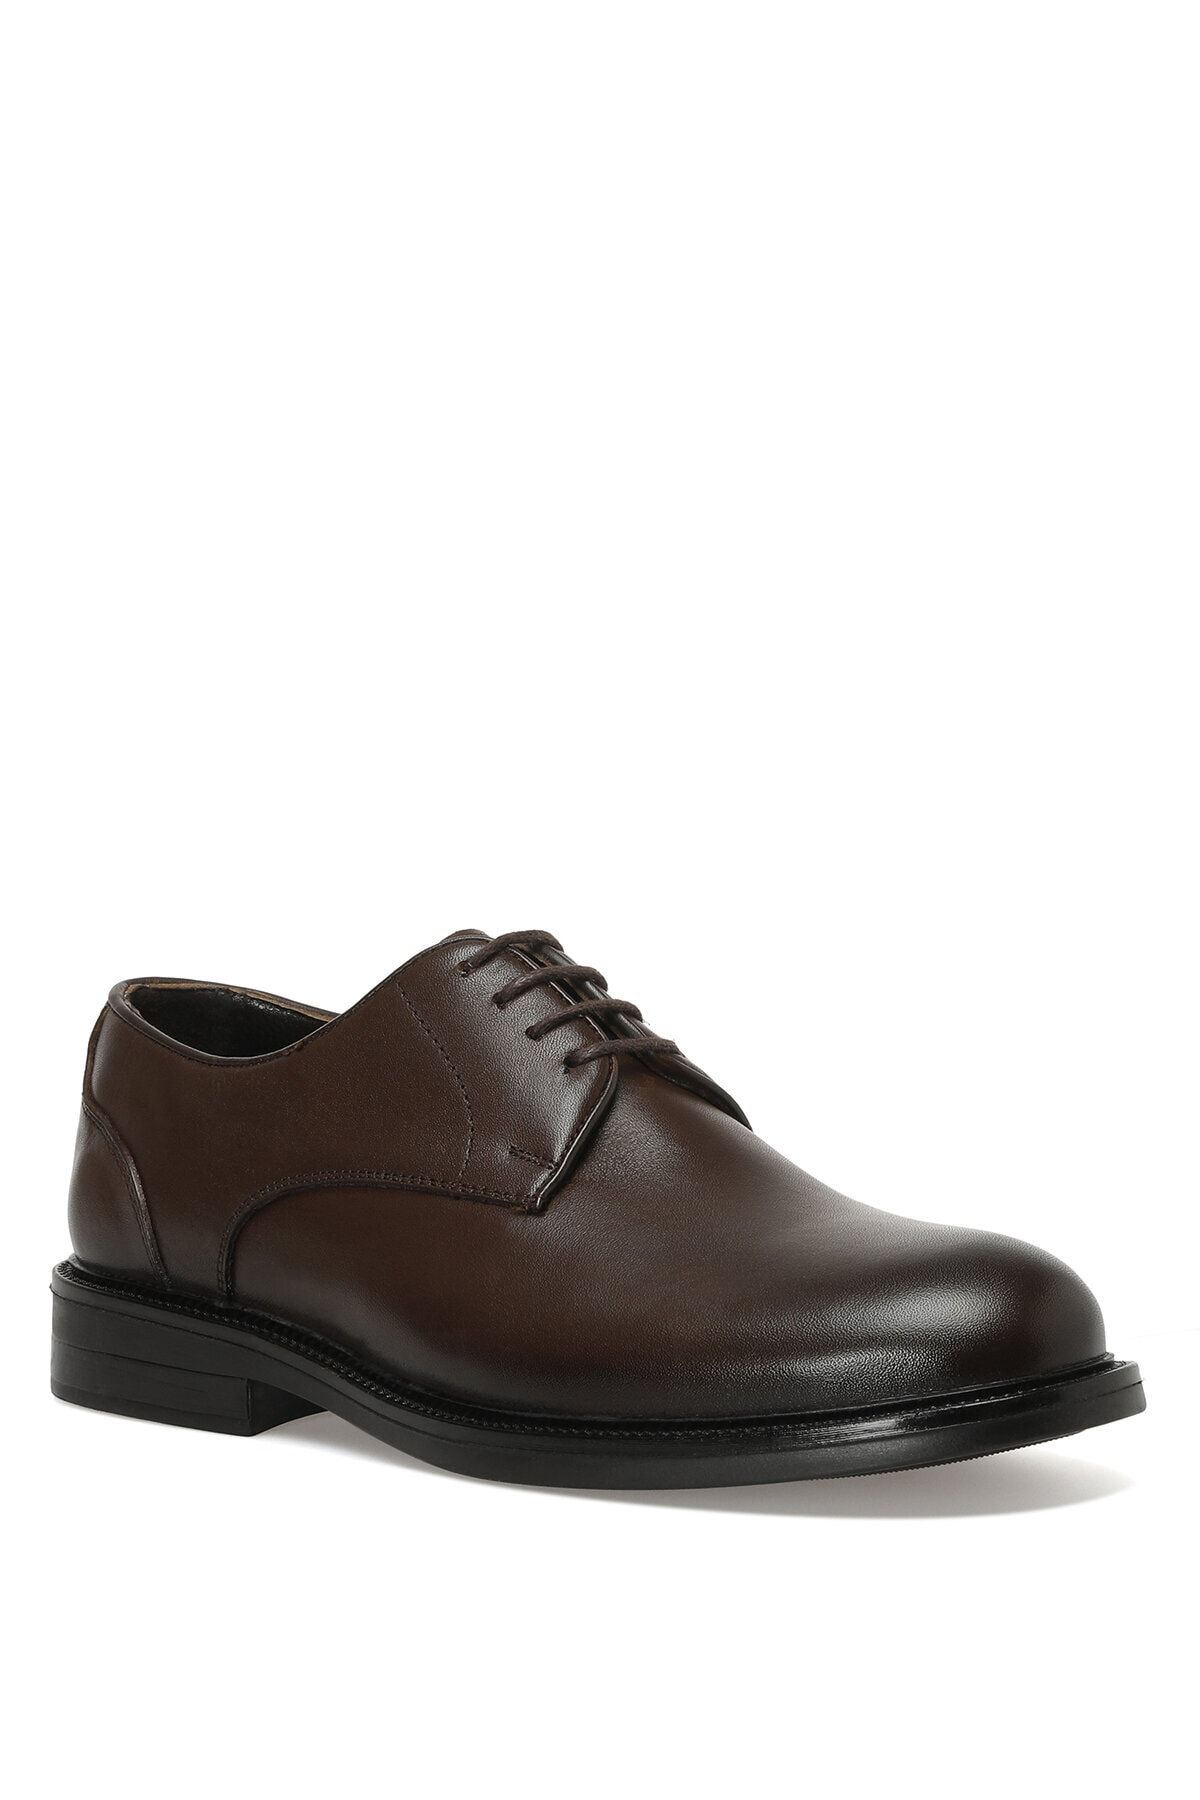 İnci Wılson 2pr Kahverengi Erkek Klasik Ayakkabı